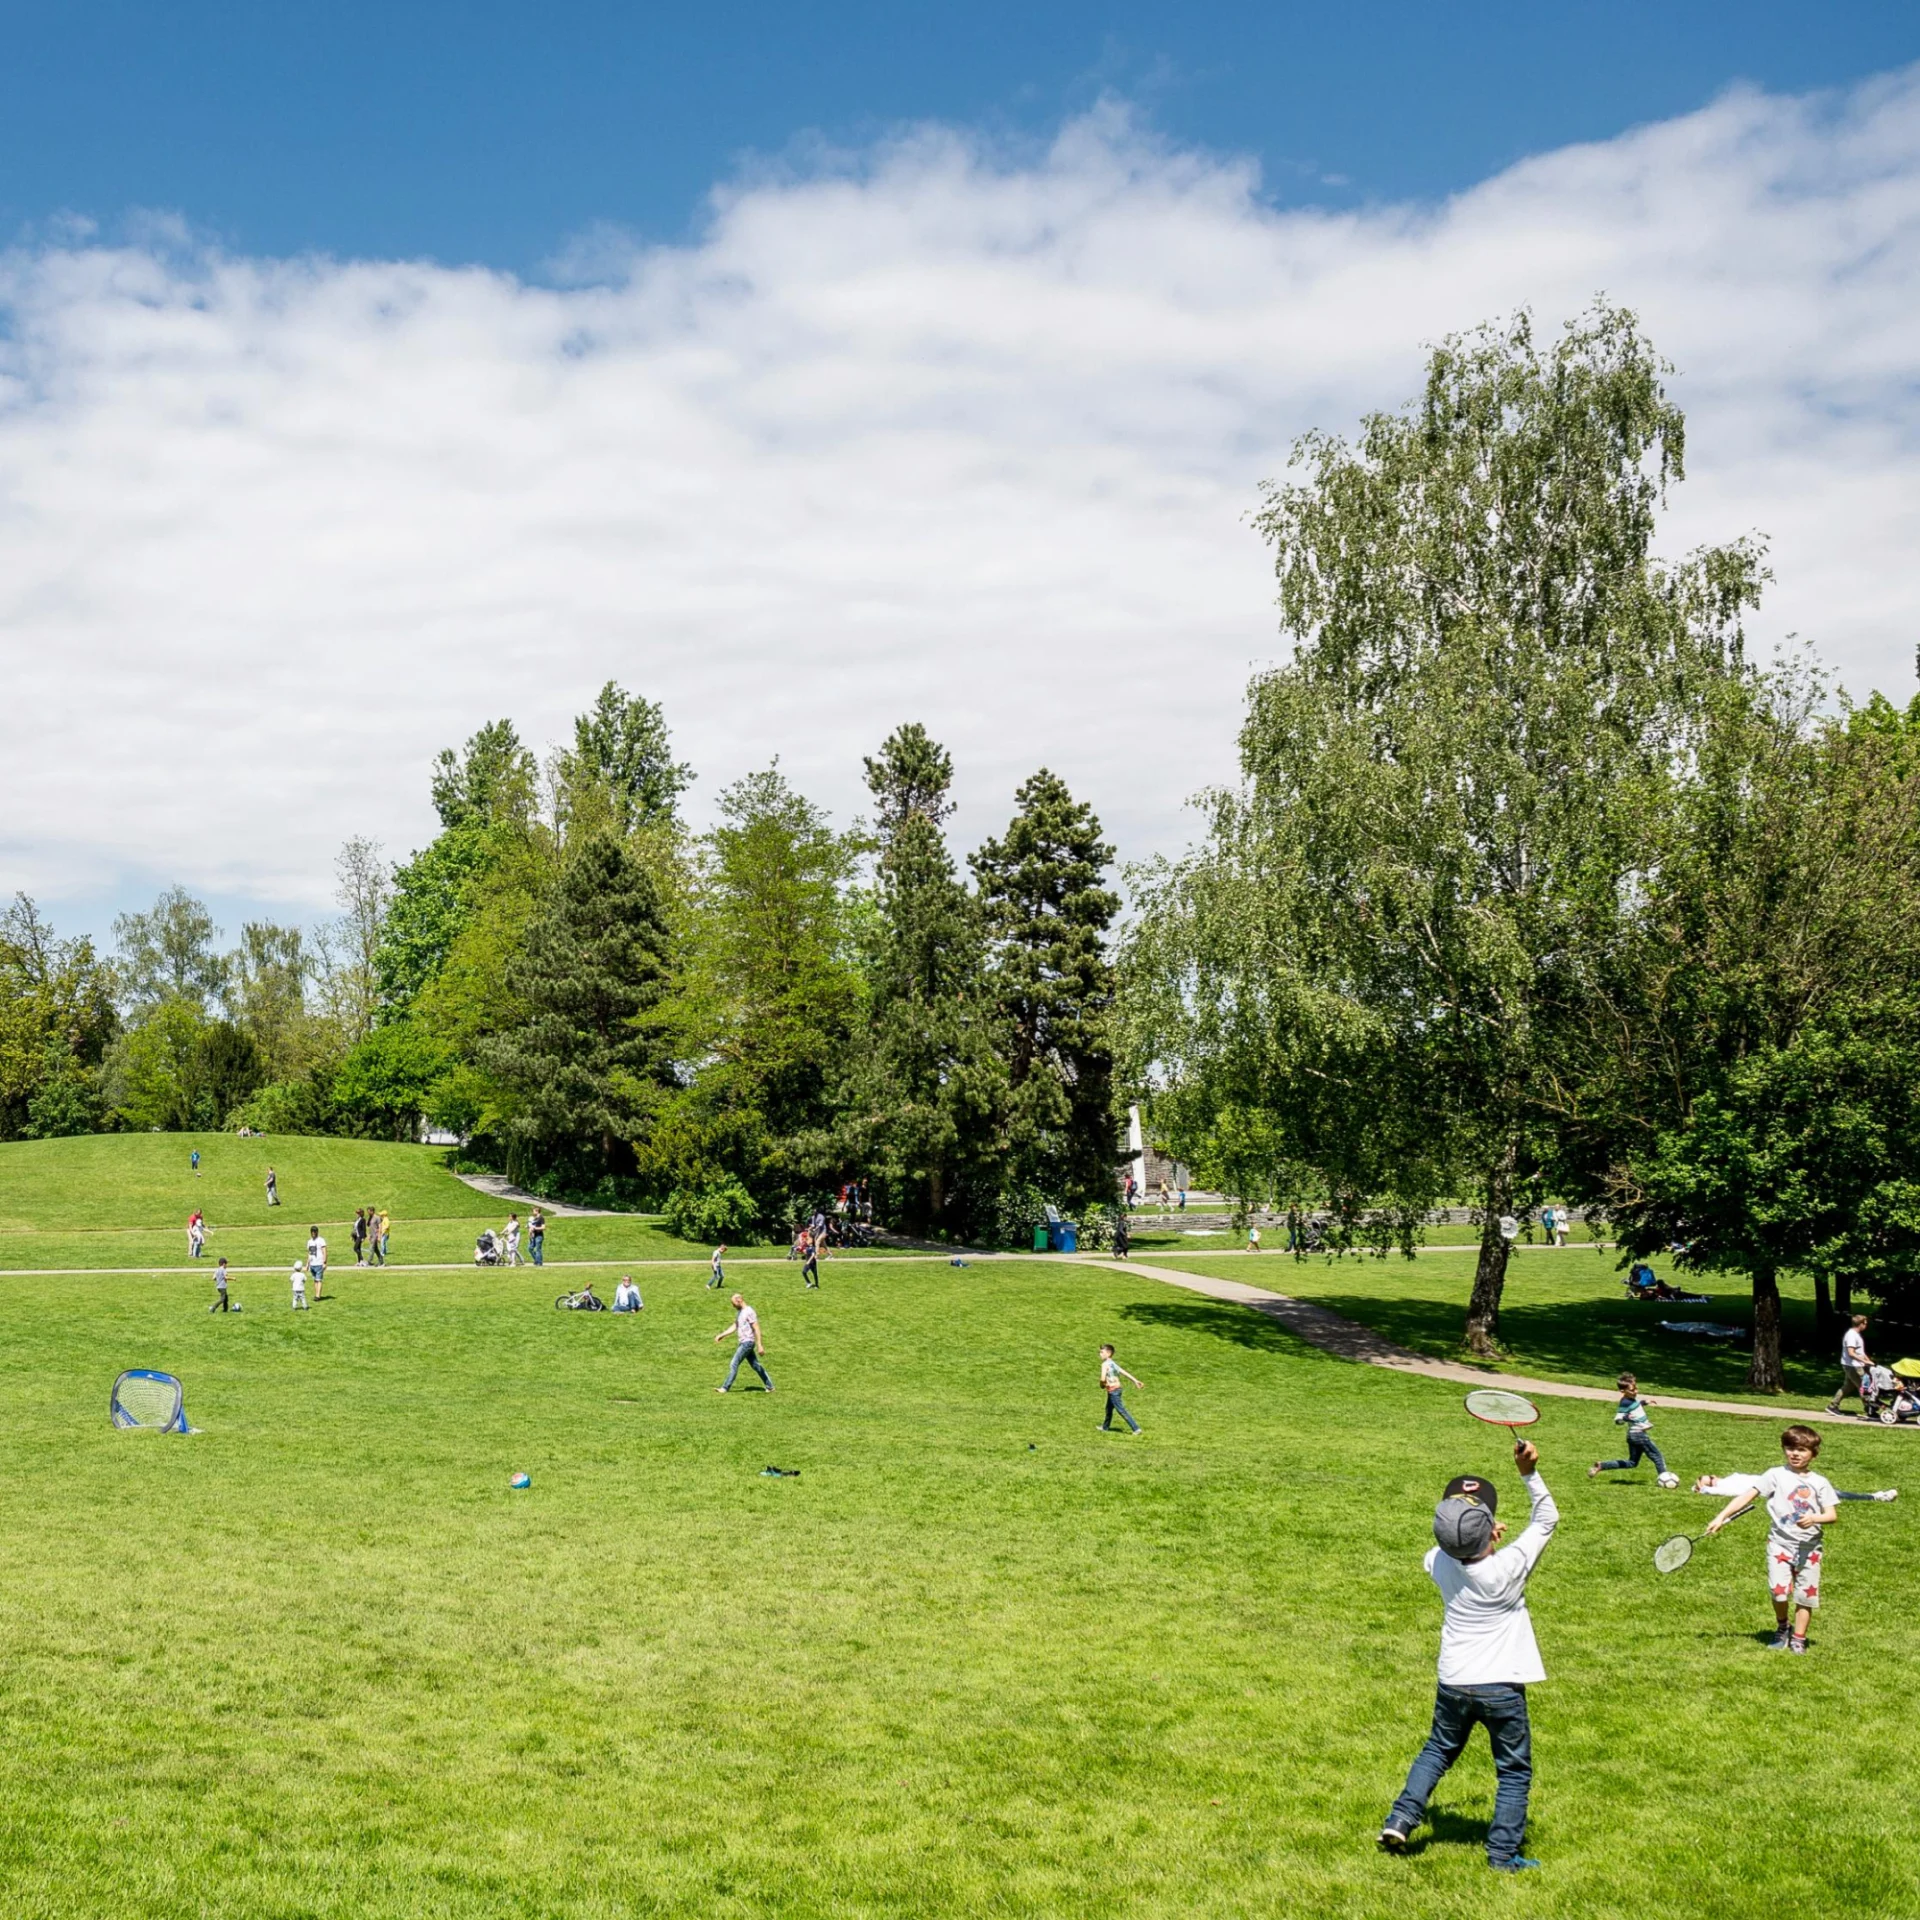 Kinder spielen auf einer Wiese in einem Park